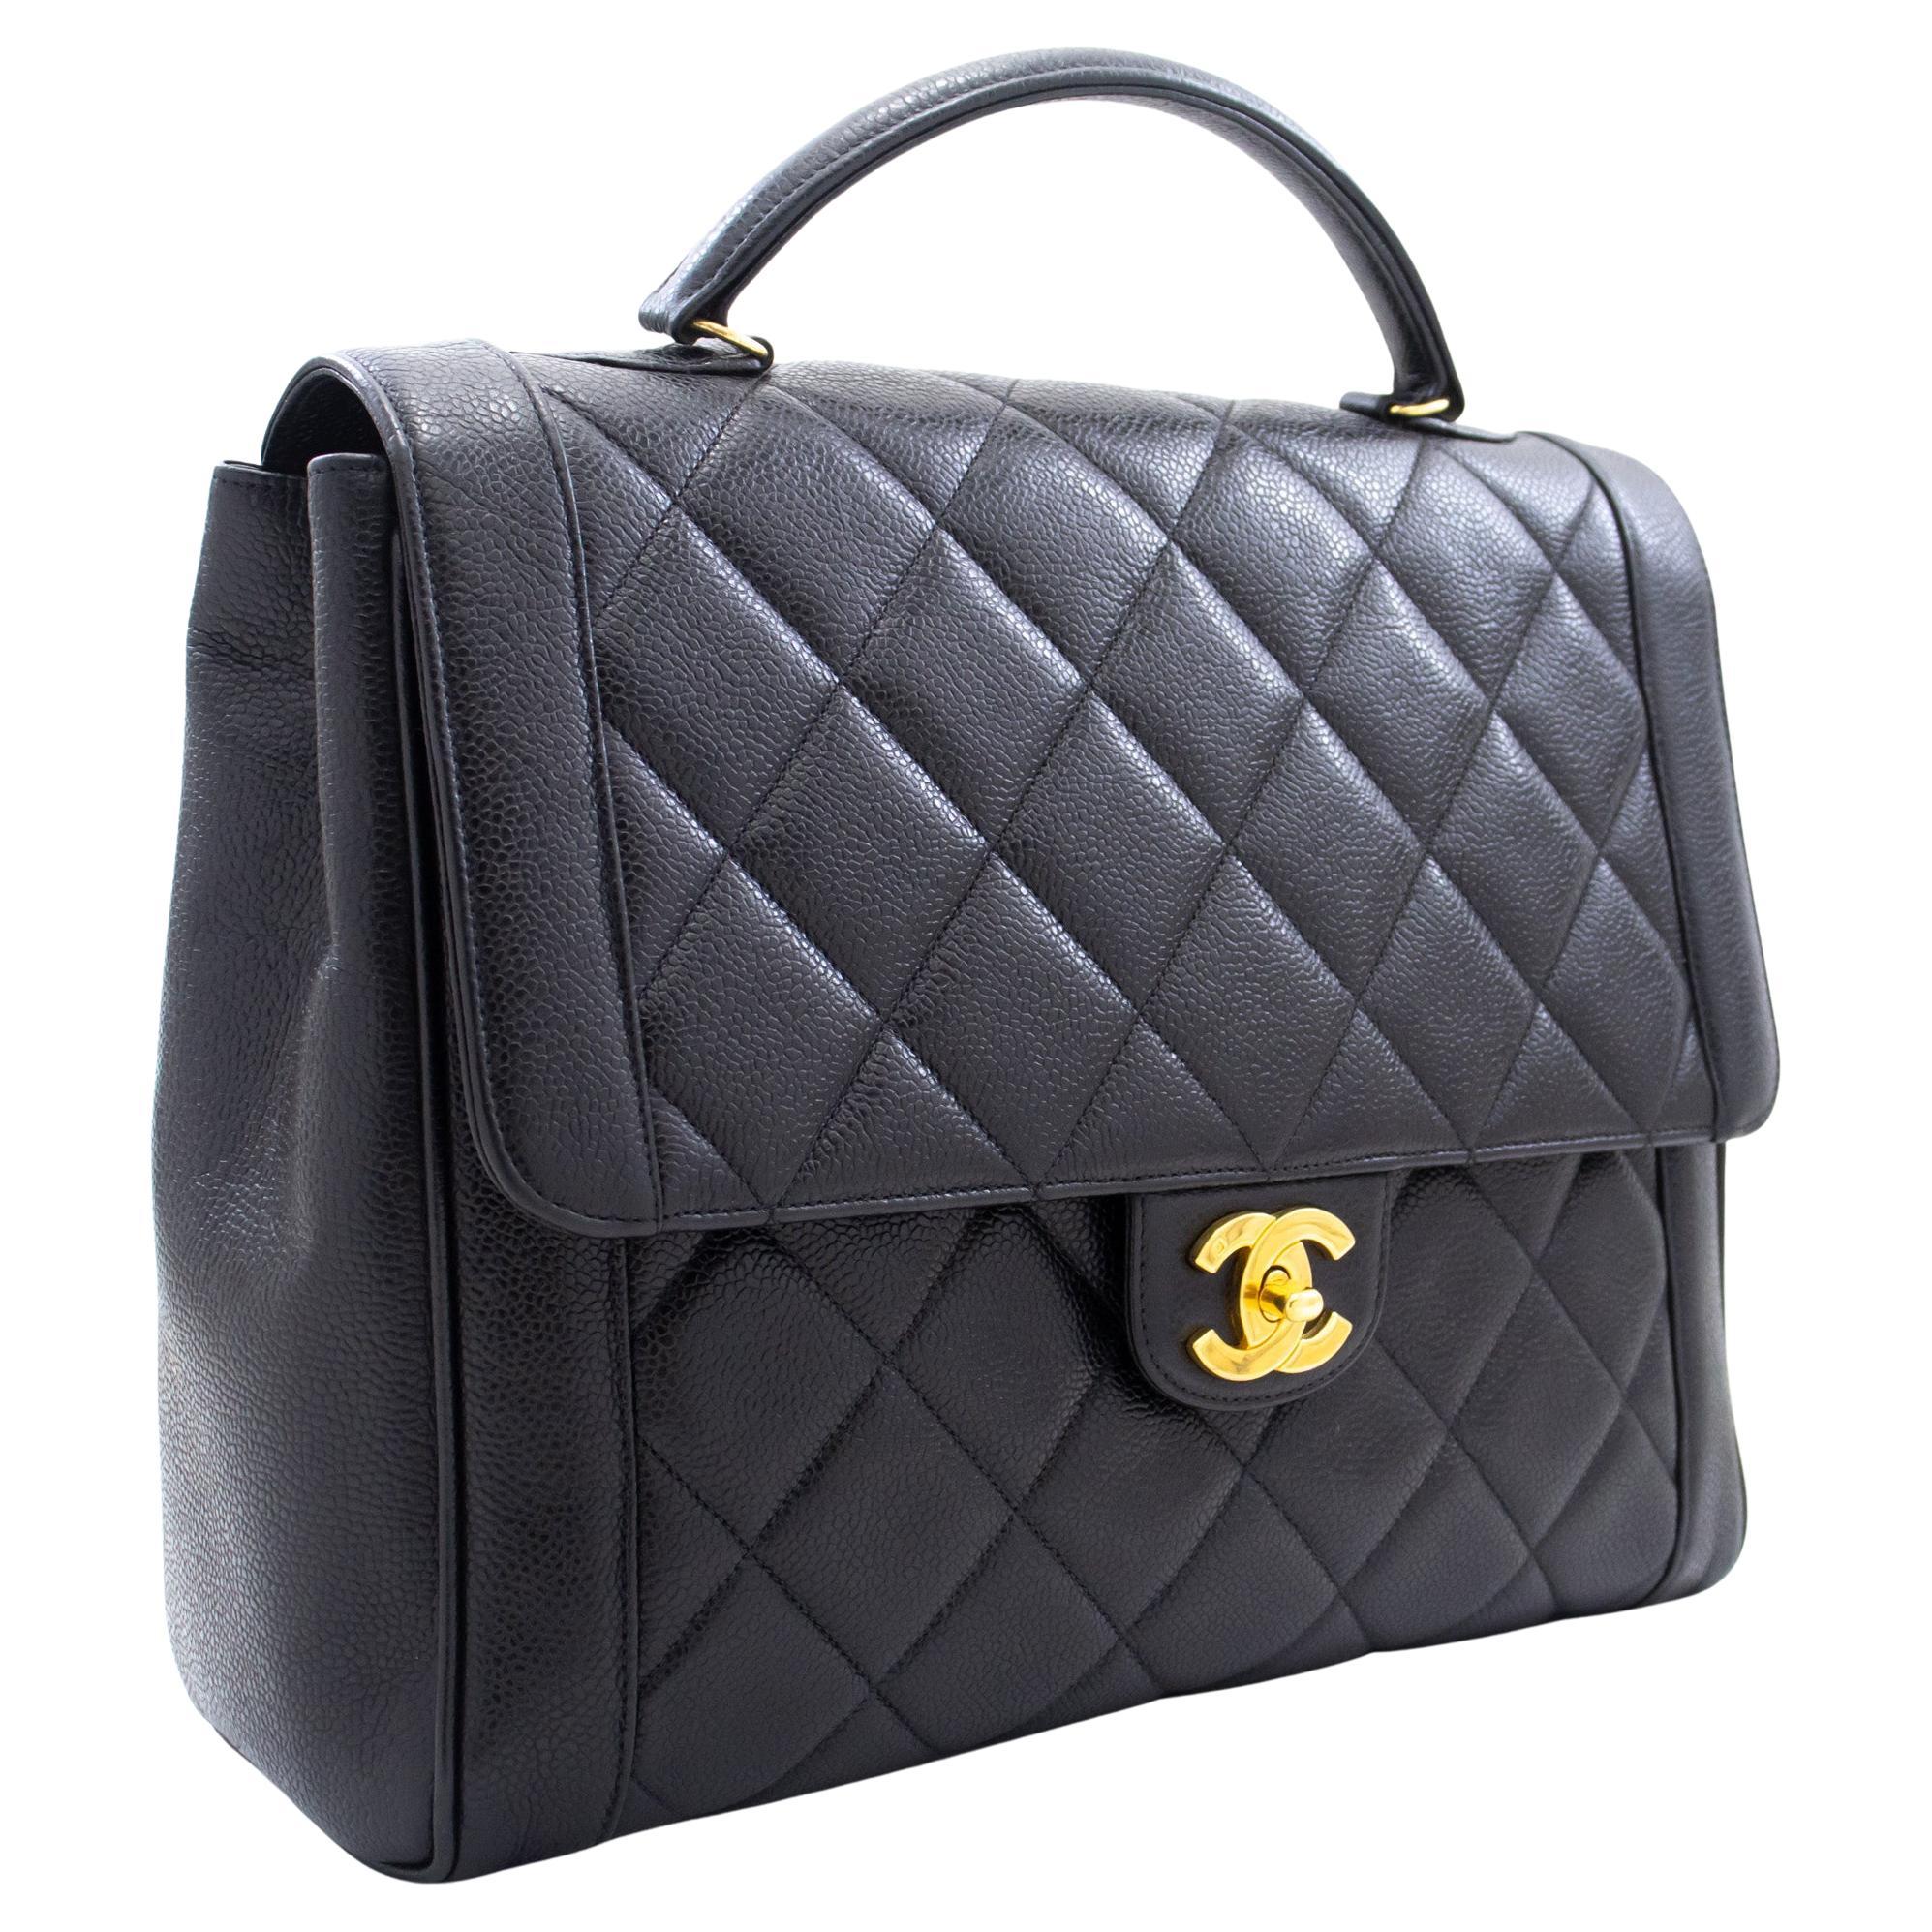 Chanel Vintage Kelly Flap Bag - 13 For Sale on 1stDibs